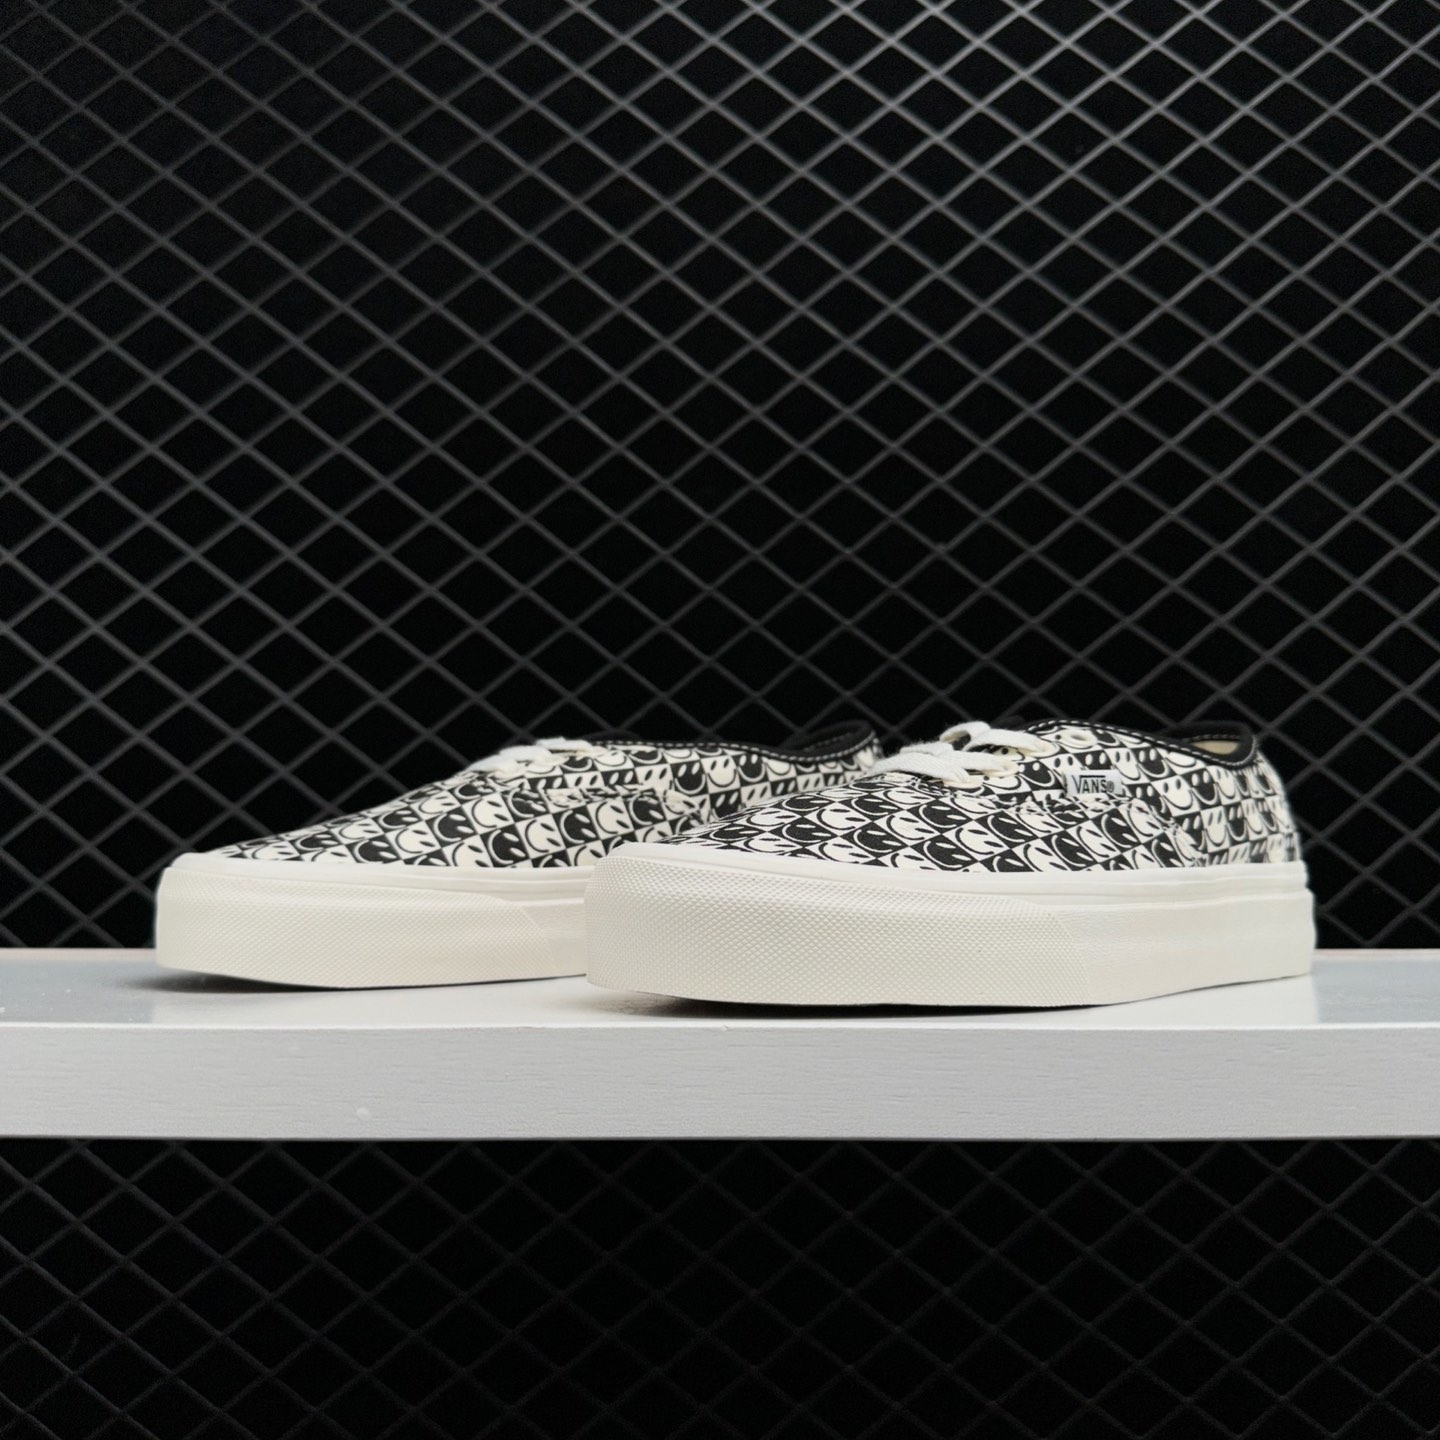 Vans Comme des x OG Authentic LX 'CDG Print - Blanc De Blanc' VN0A4BV9SHM: Limited Edition Collaboration Footwear